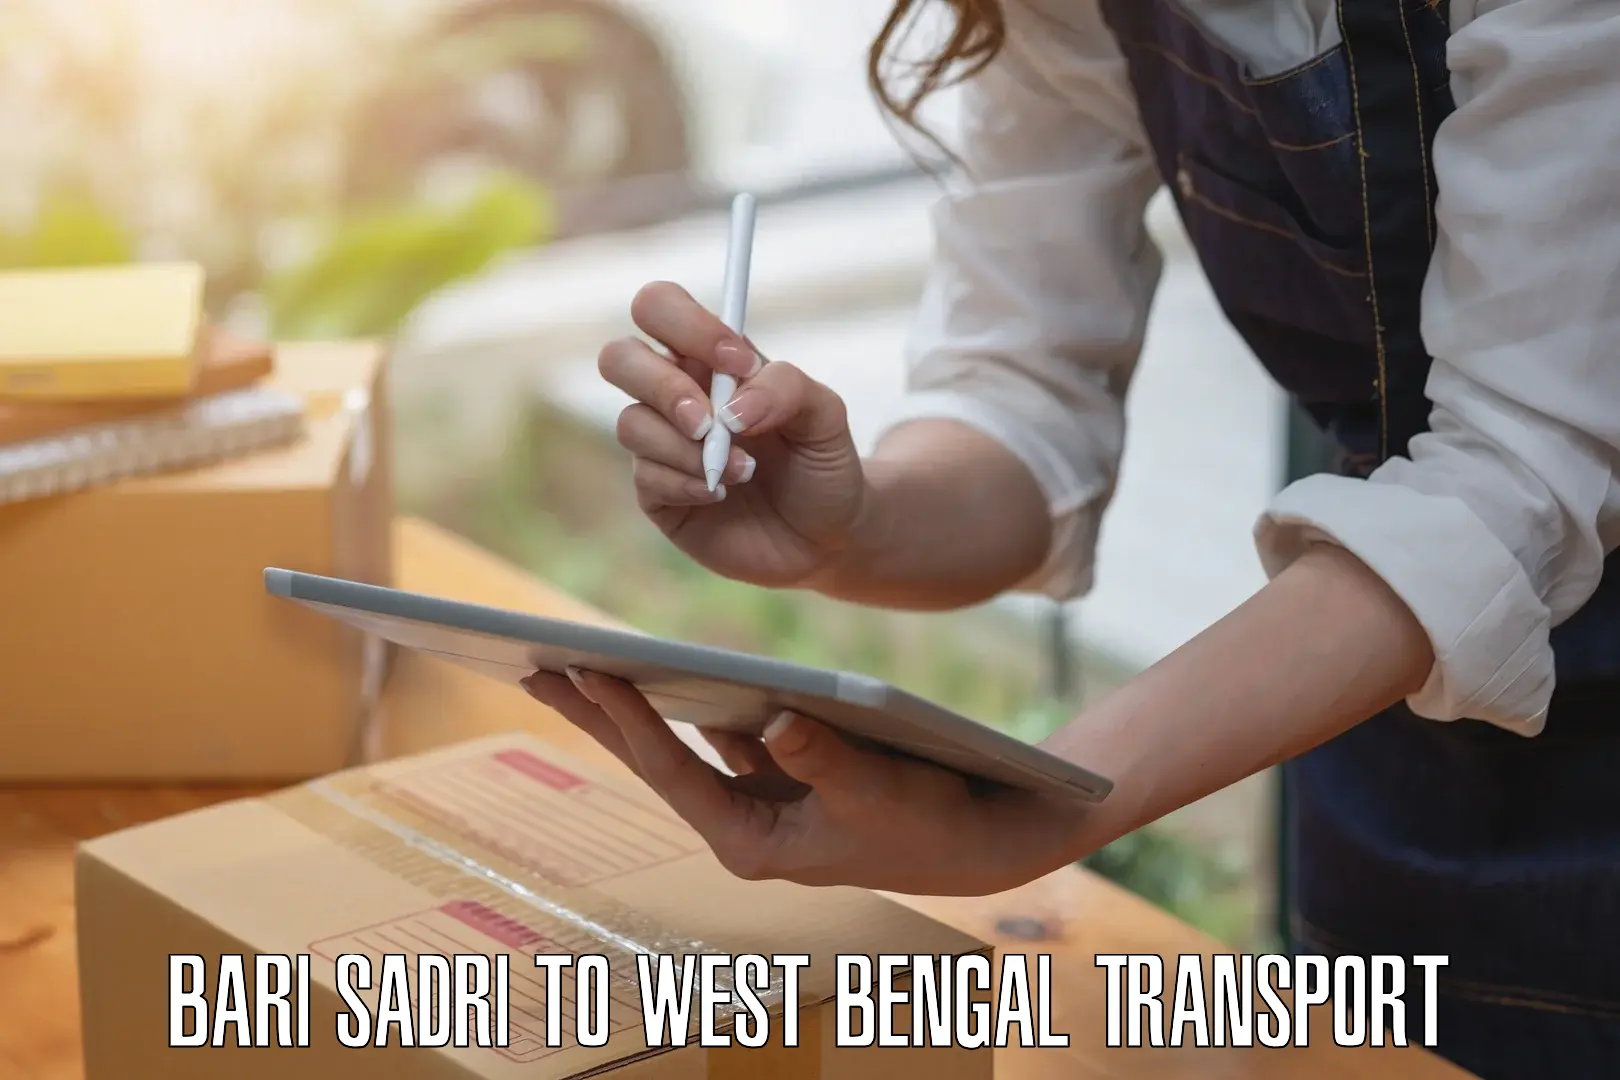 Container transport service Bari Sadri to West Bengal